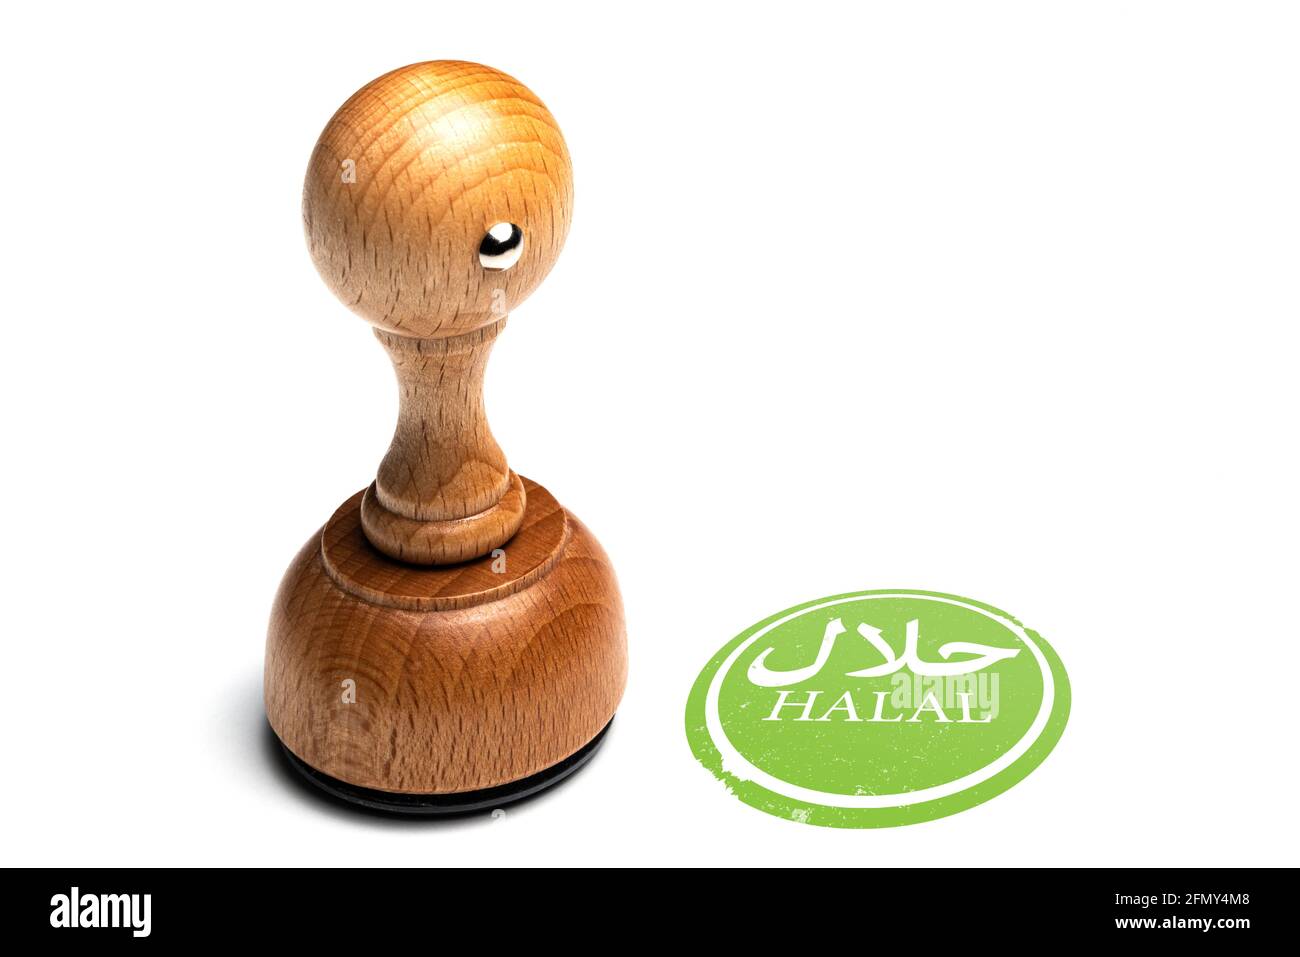 impronta in gomma HALAL di legno con parola halal in arabo isolato su sfondo bianco Foto Stock